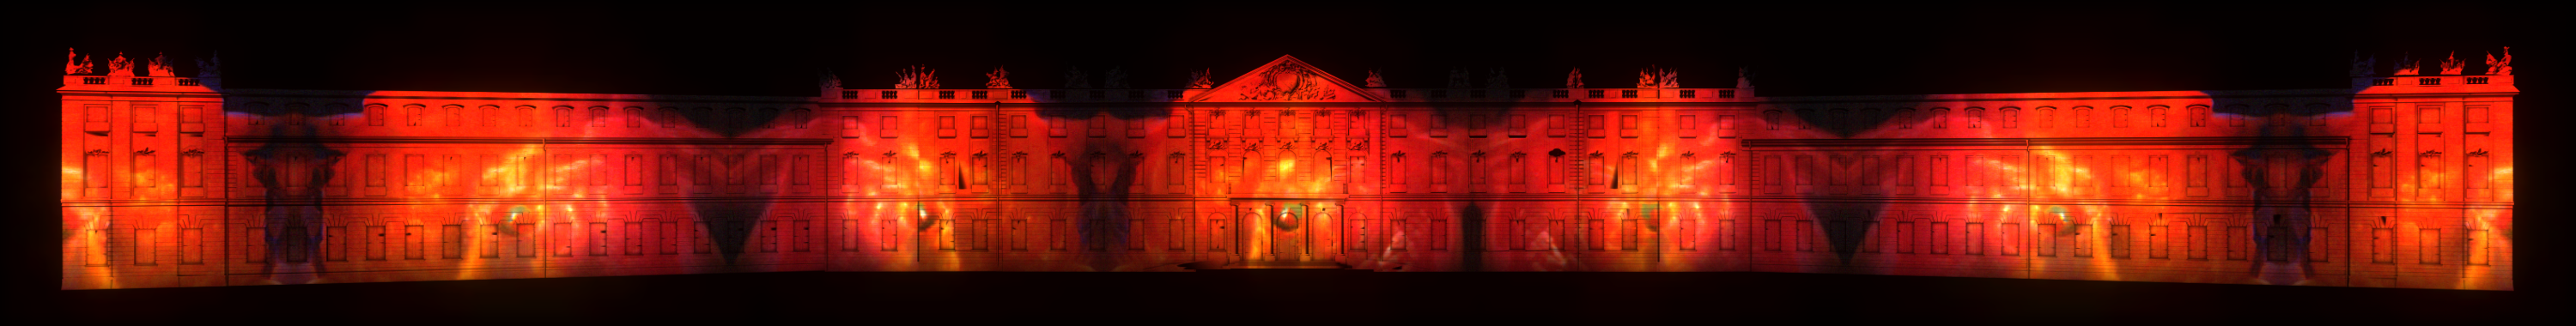 Auf der Karlsruher Schlossfassade ist ein Projection Mapping zu sehen, das in der Nacht leuchtet. Das Mapping ist völlig Rot mit orangenen Elementen, eventuell wird Feuer dargestellt.